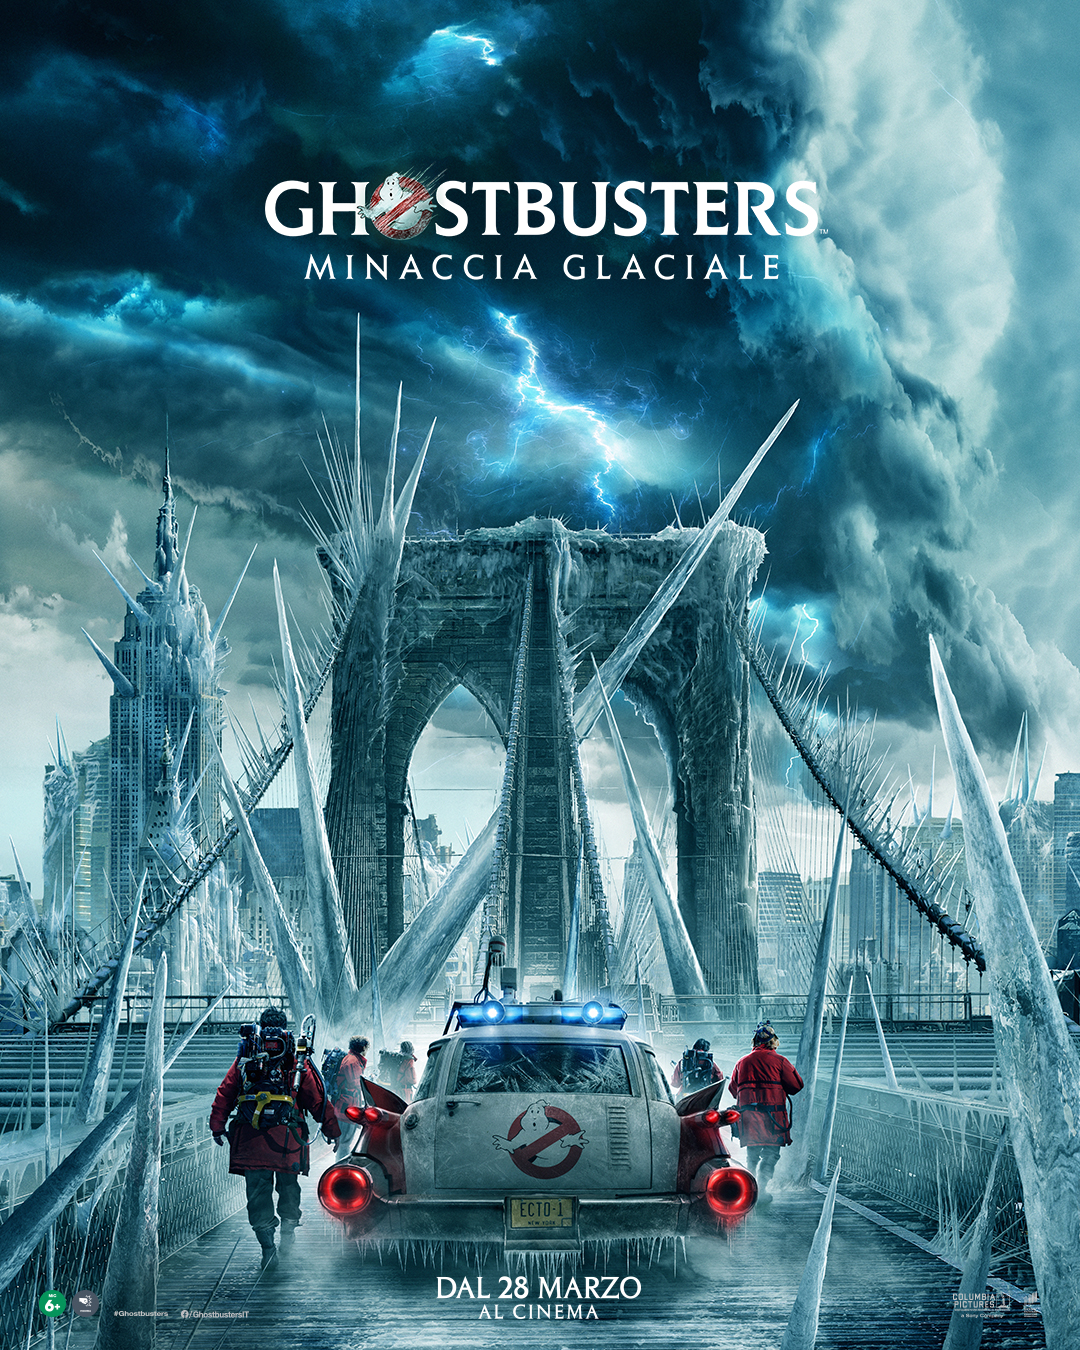 Ghostbusters: Minaccia Glaciale, rilasciato il nuovo trailer. Dall'11 aprile solo al cinema prodotto da Sony Pictures